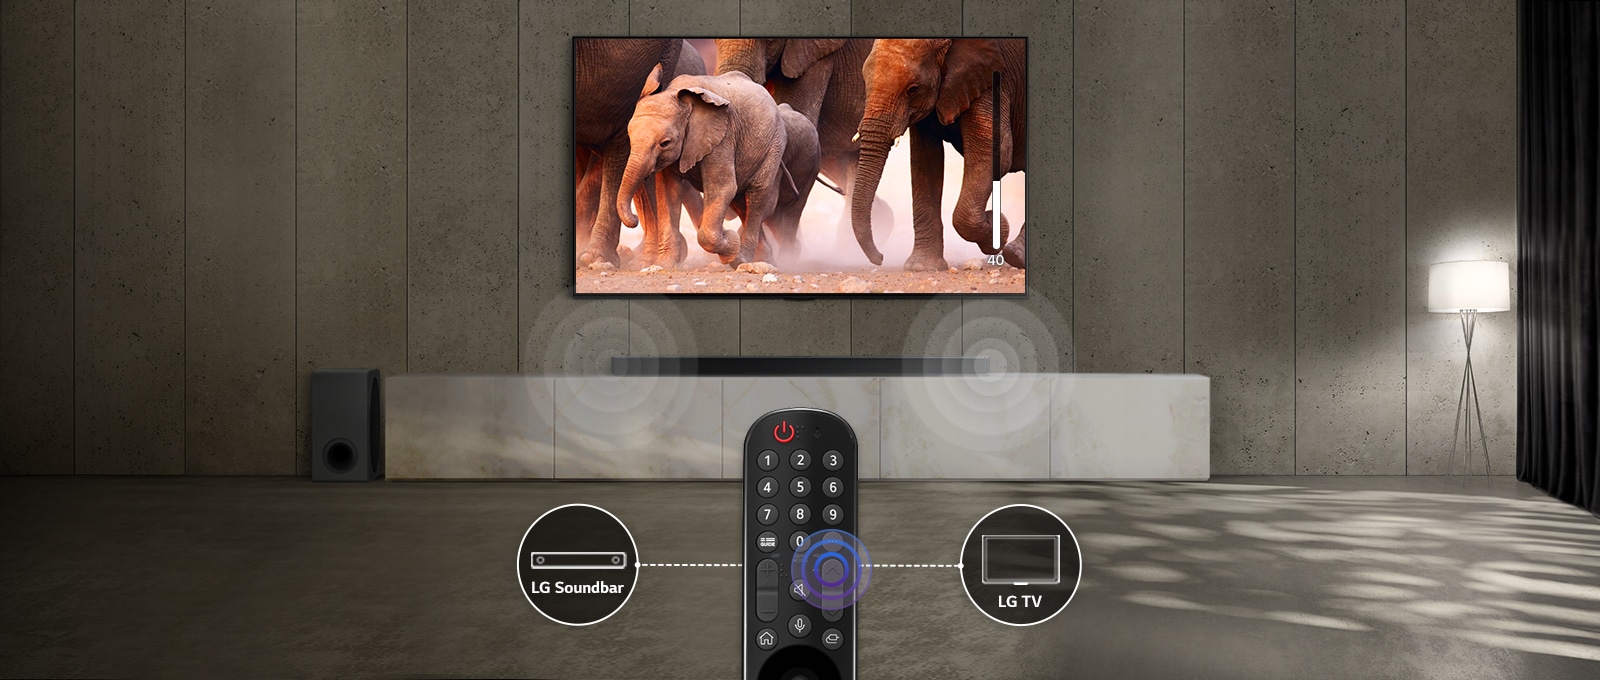 تلویزیون در اتاق با نورهای ظریف که تصاویری از فیل‌های در حال عبور را نشان می‌دهد. همچنین یک جلوه صوتی در اسپیکر خطی زیر تلویزیون وجود دارد. در پایین تصویر، یک کنترل از راه دور تلویزیون قرار دارد و اسپیکر خطی و آیکون تلویزیون به سمت چپ و راست کنترل از راه دور متصل است.